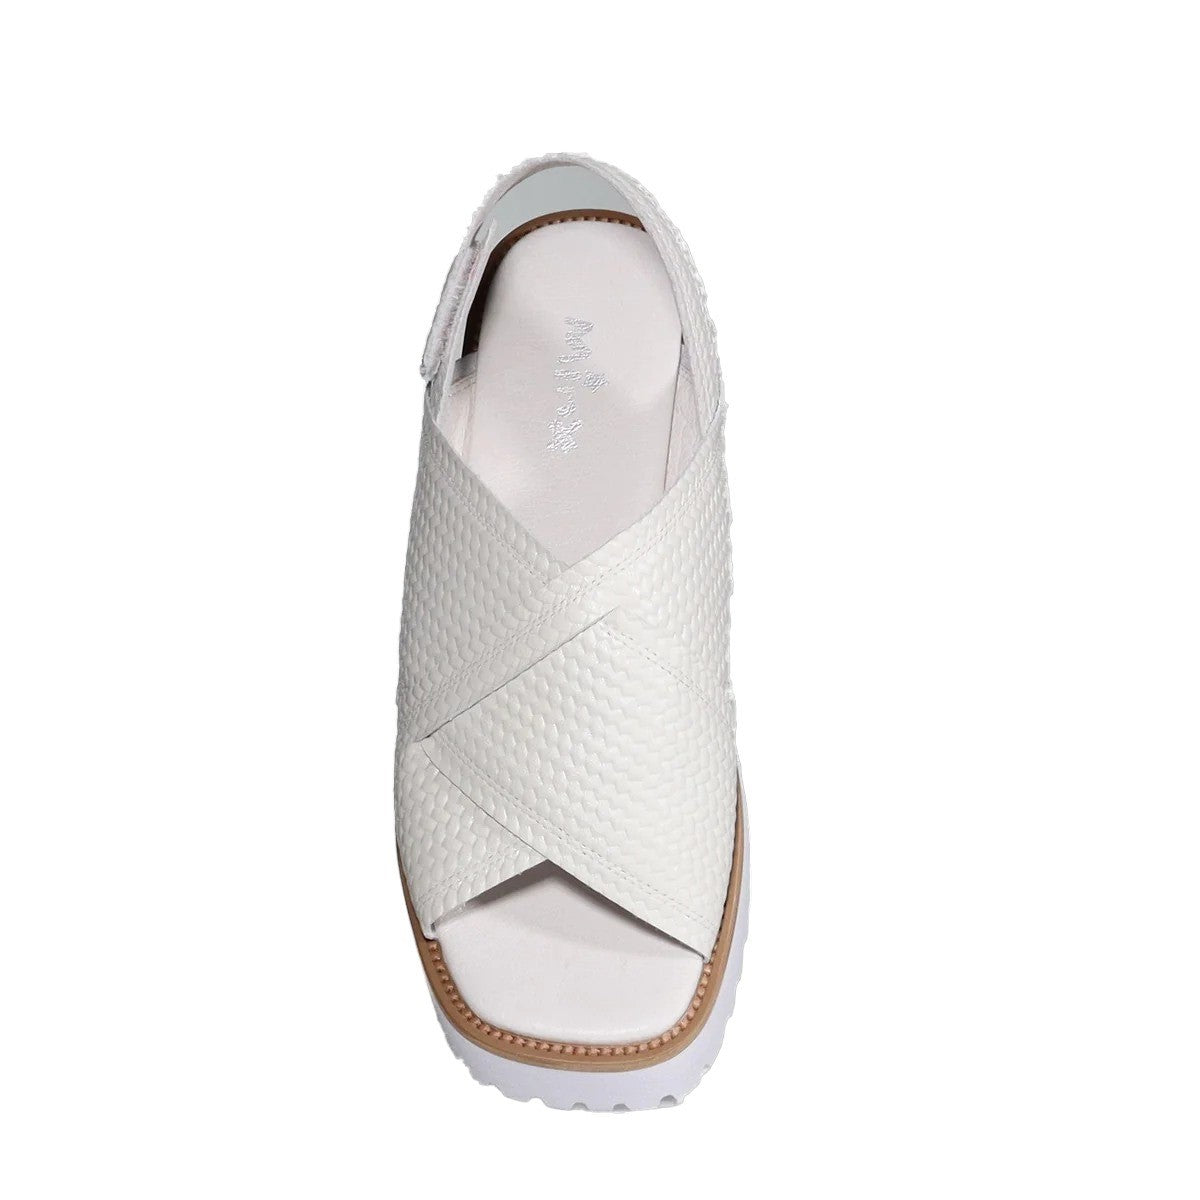 Minx Bobby Velcro Leather Sandal - Women's